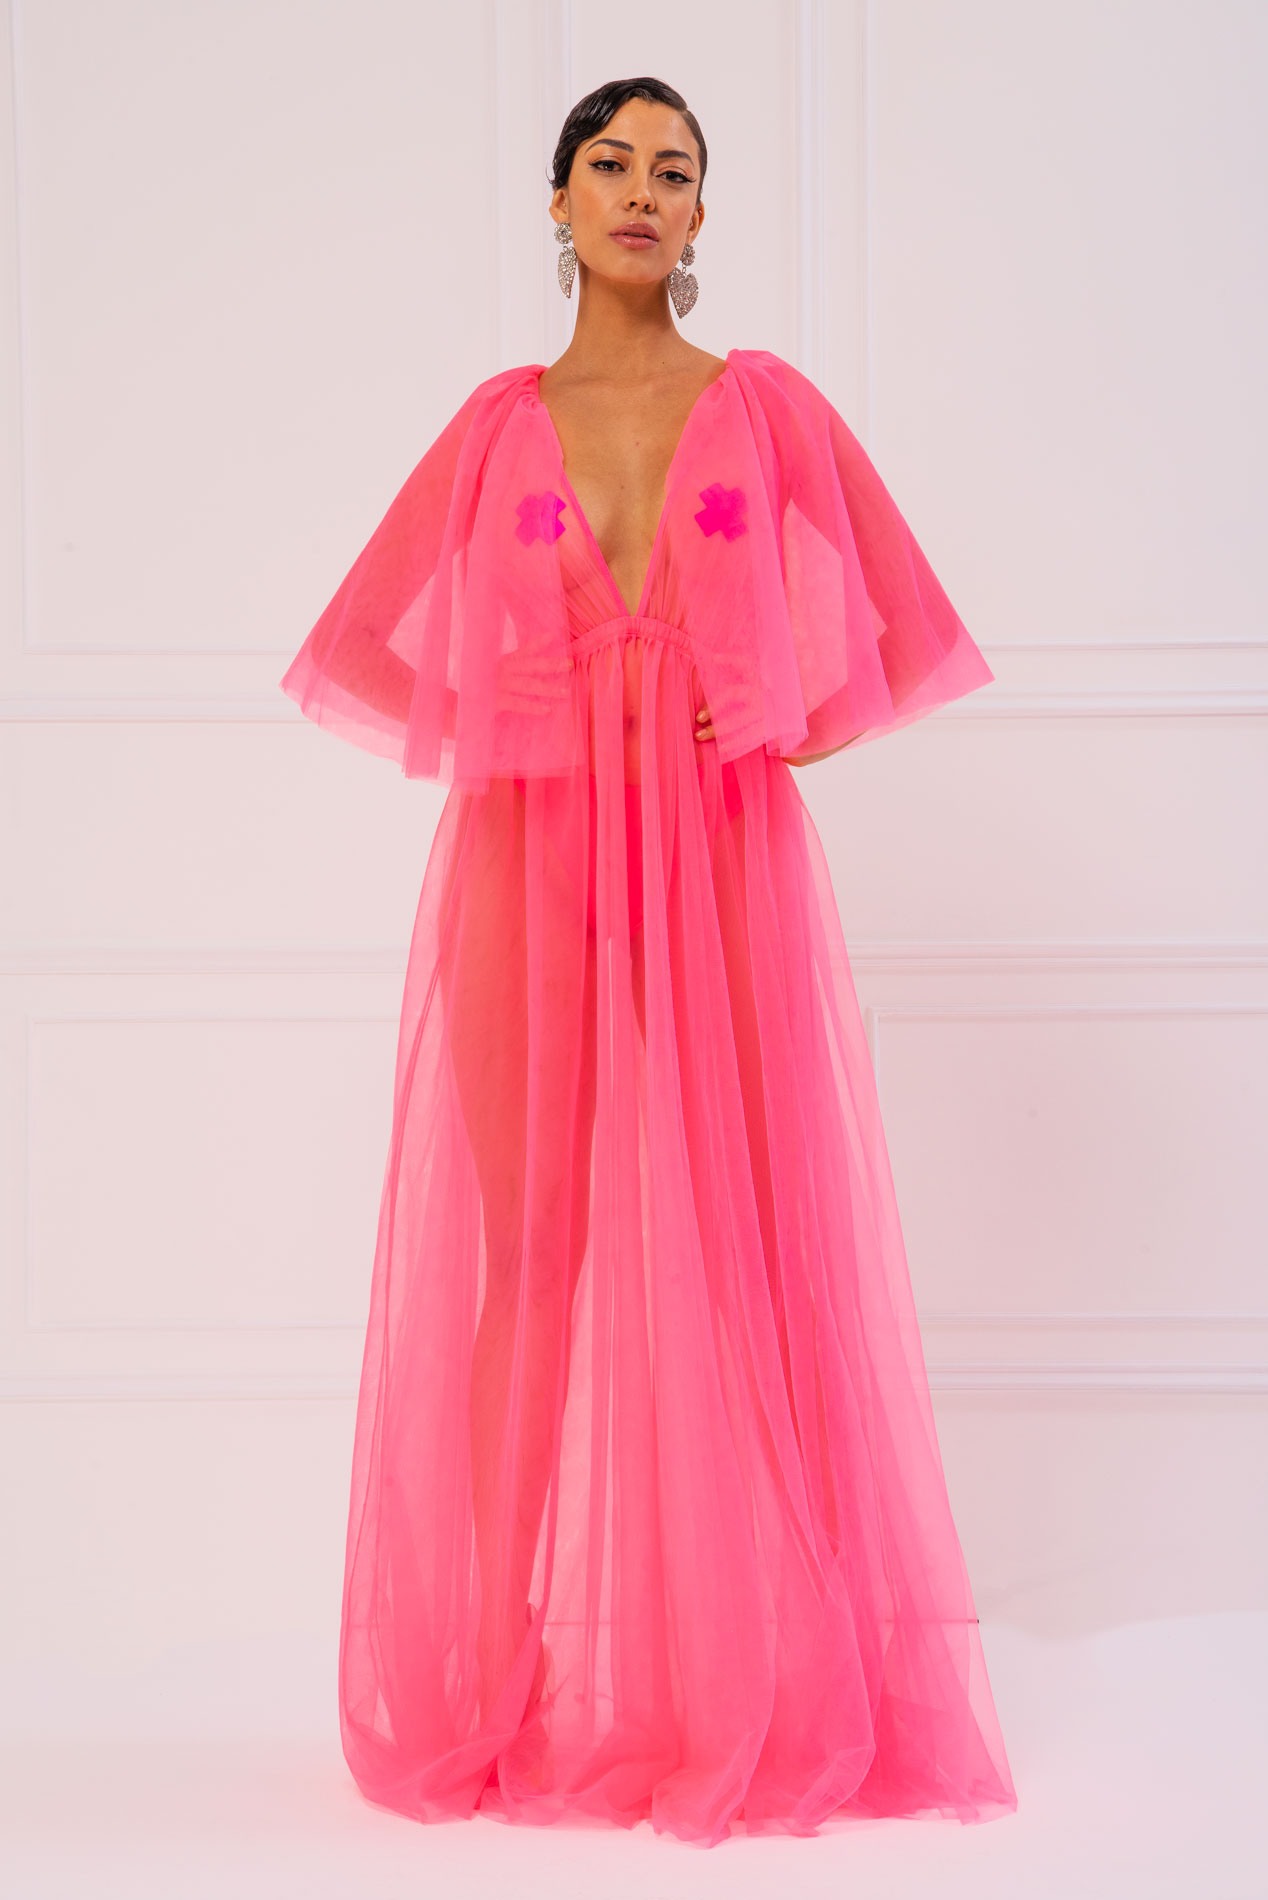 pink sheer maxi dress